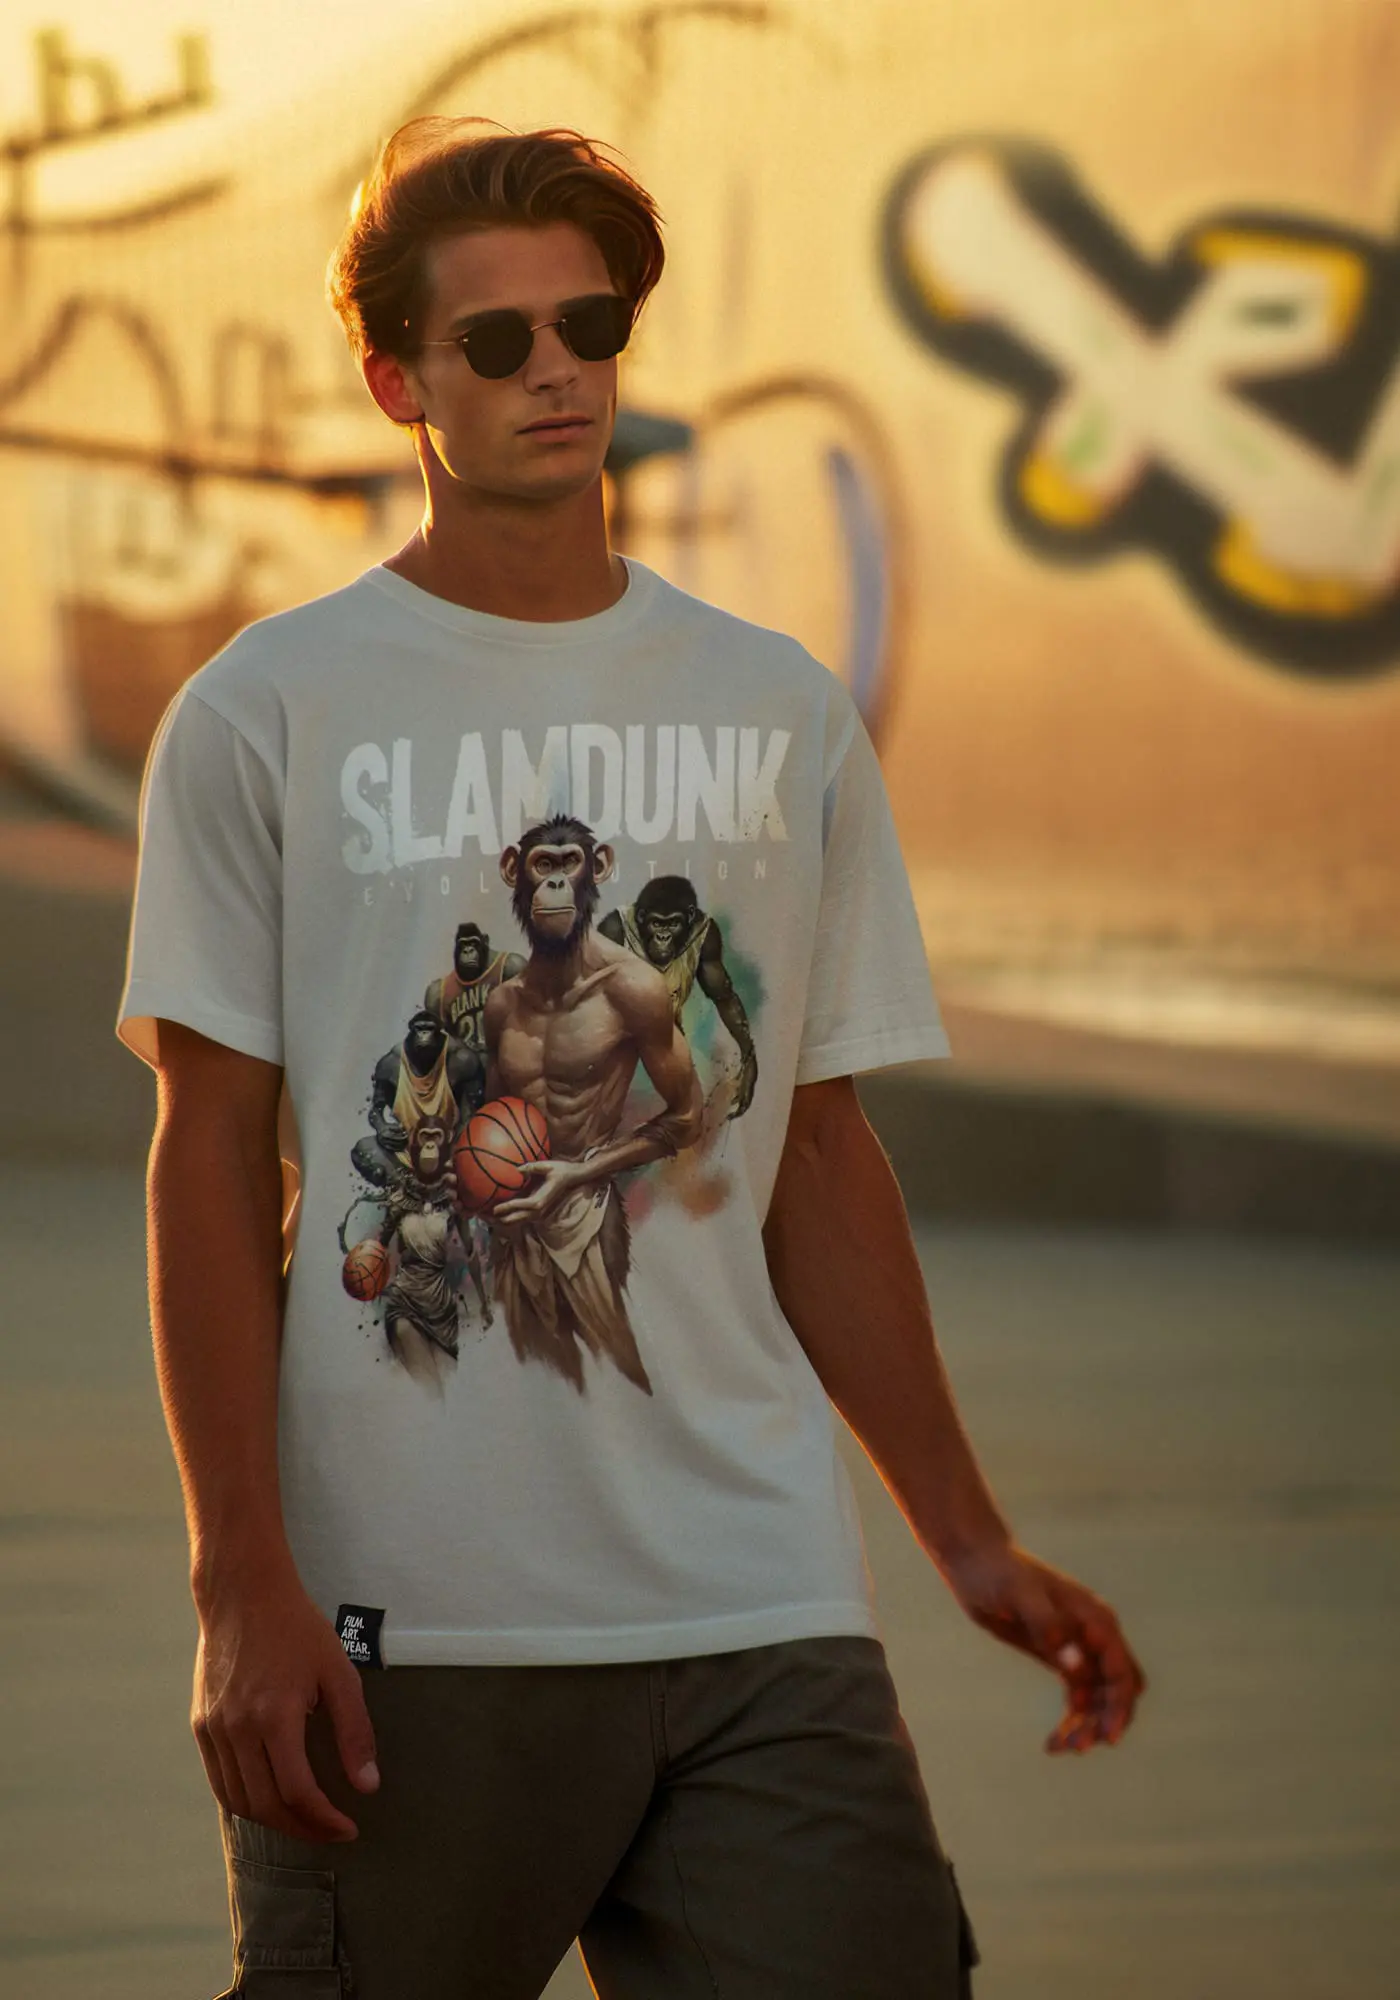 Jordan träg T-Shirt Slamdunk in Desert Dust in der Abenddämmerung auf einer Halfpipe